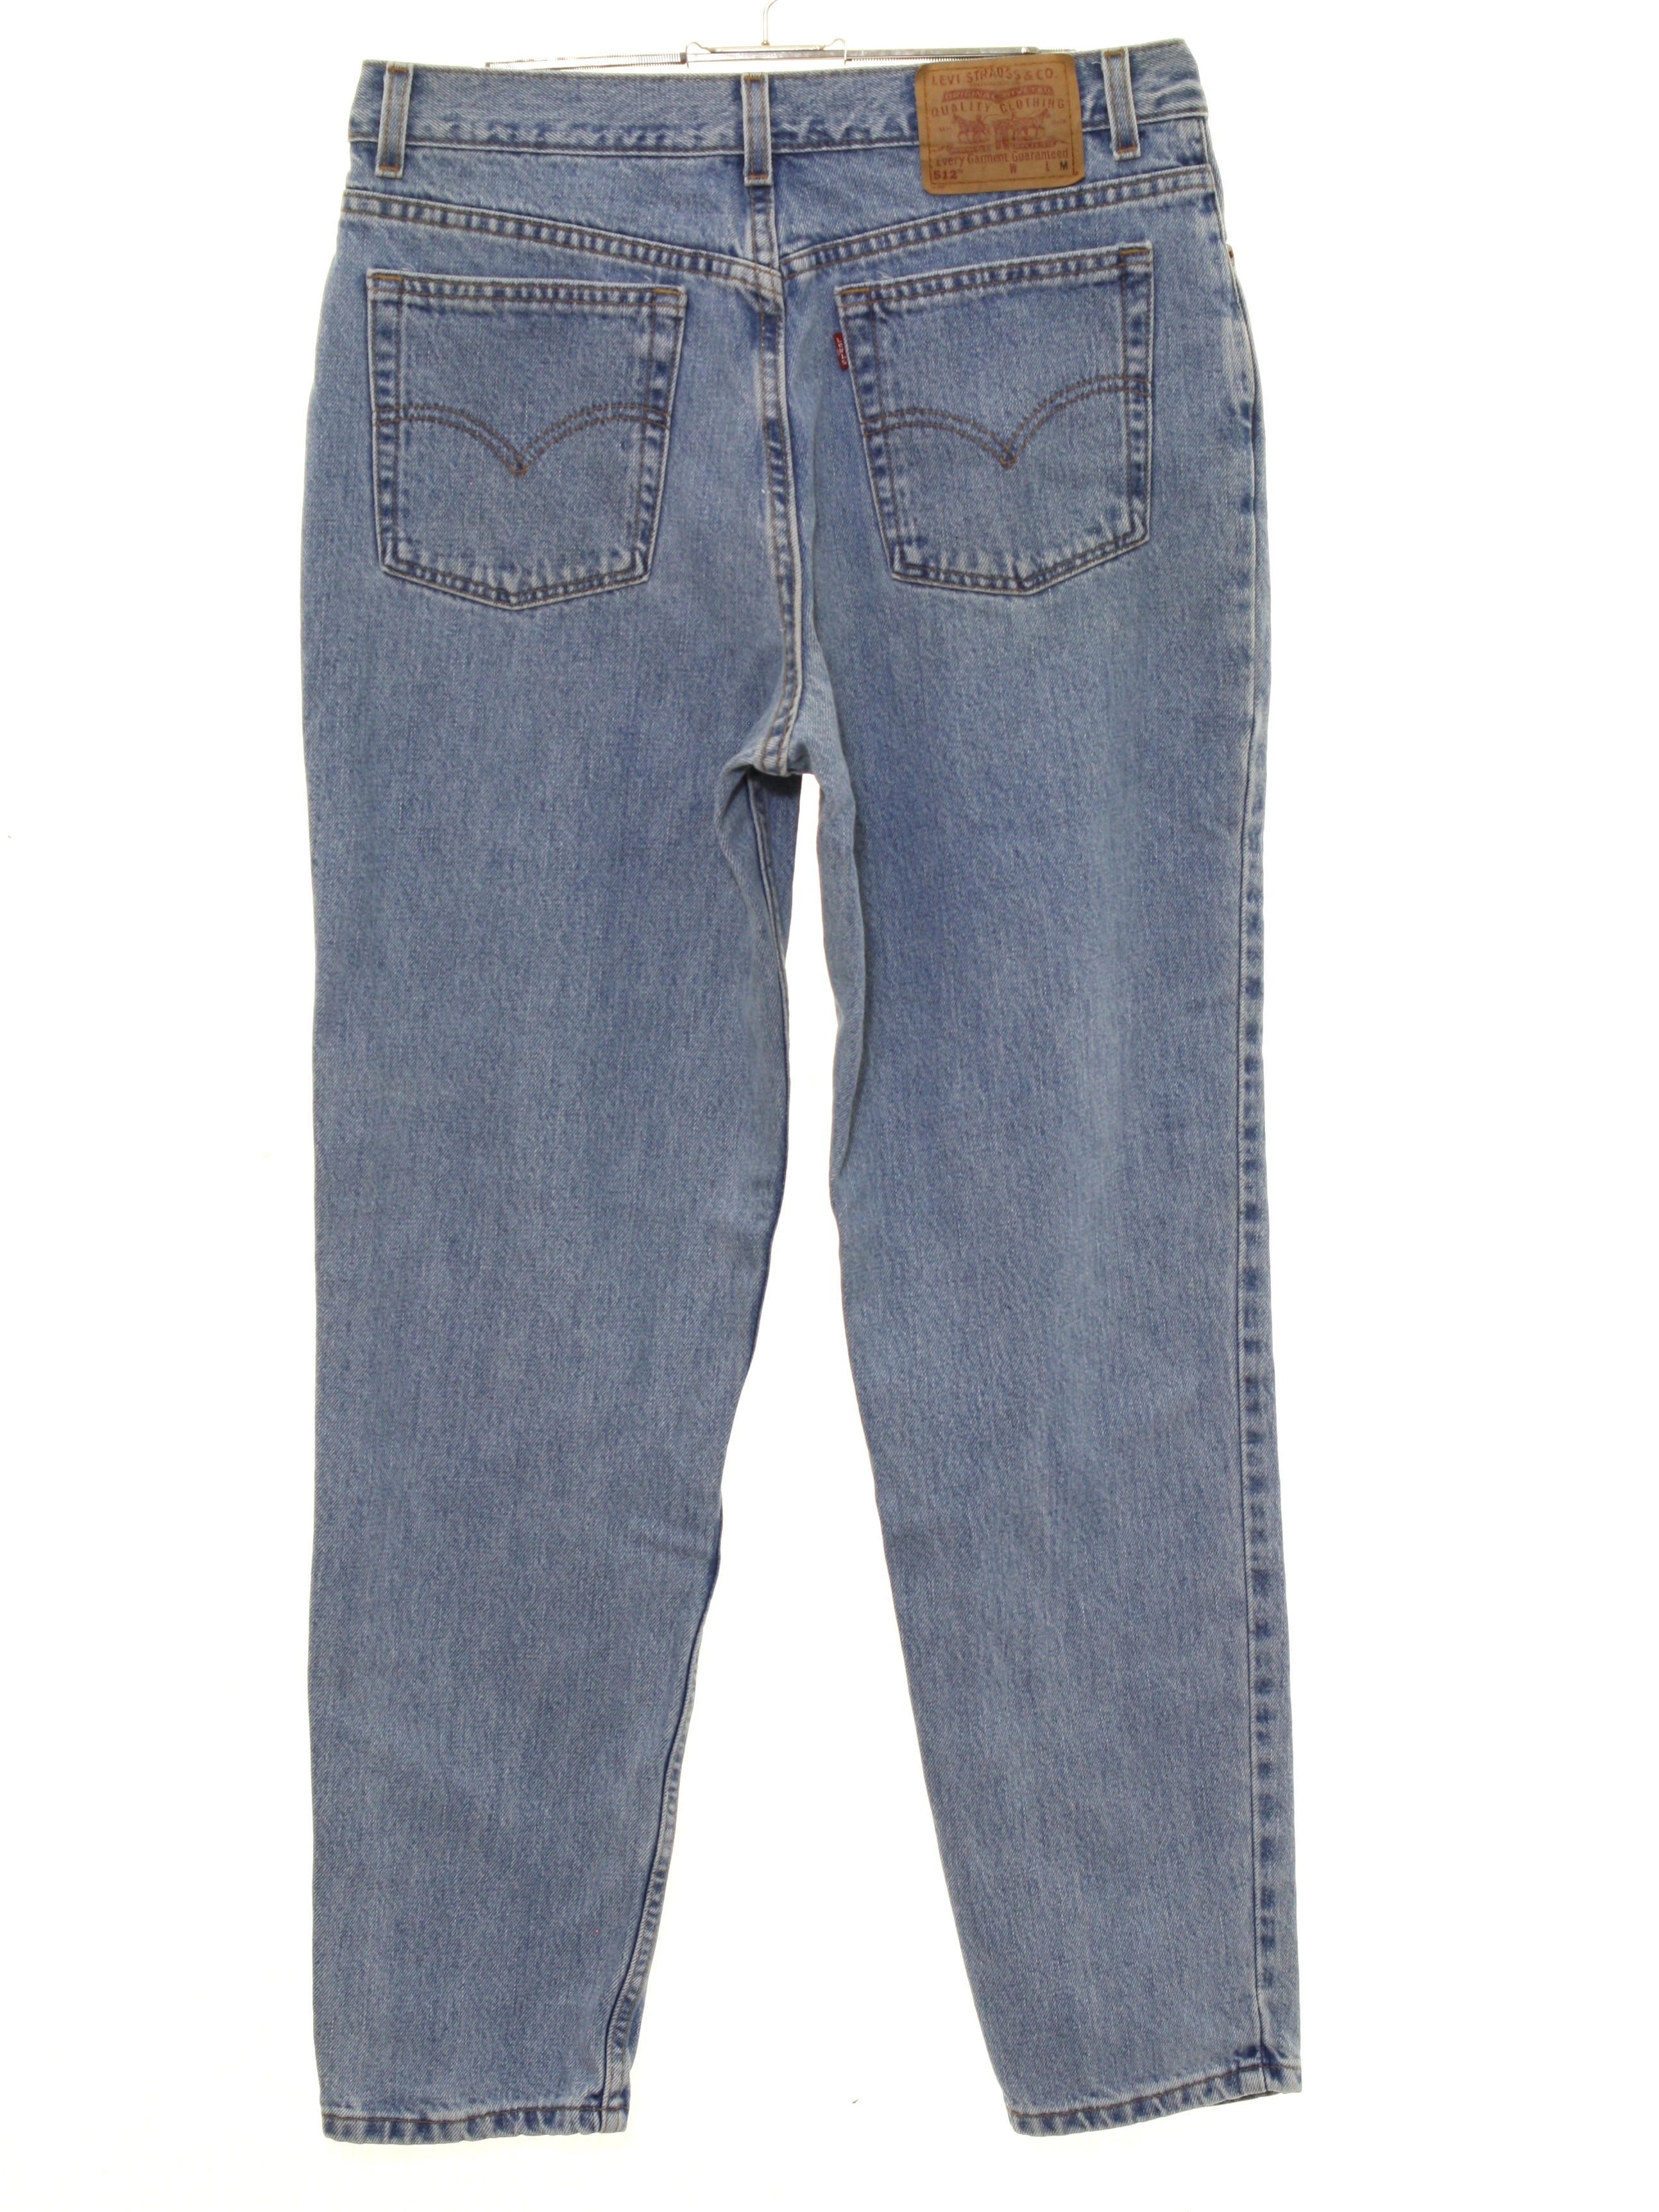 512 levi's womens vintage jeans